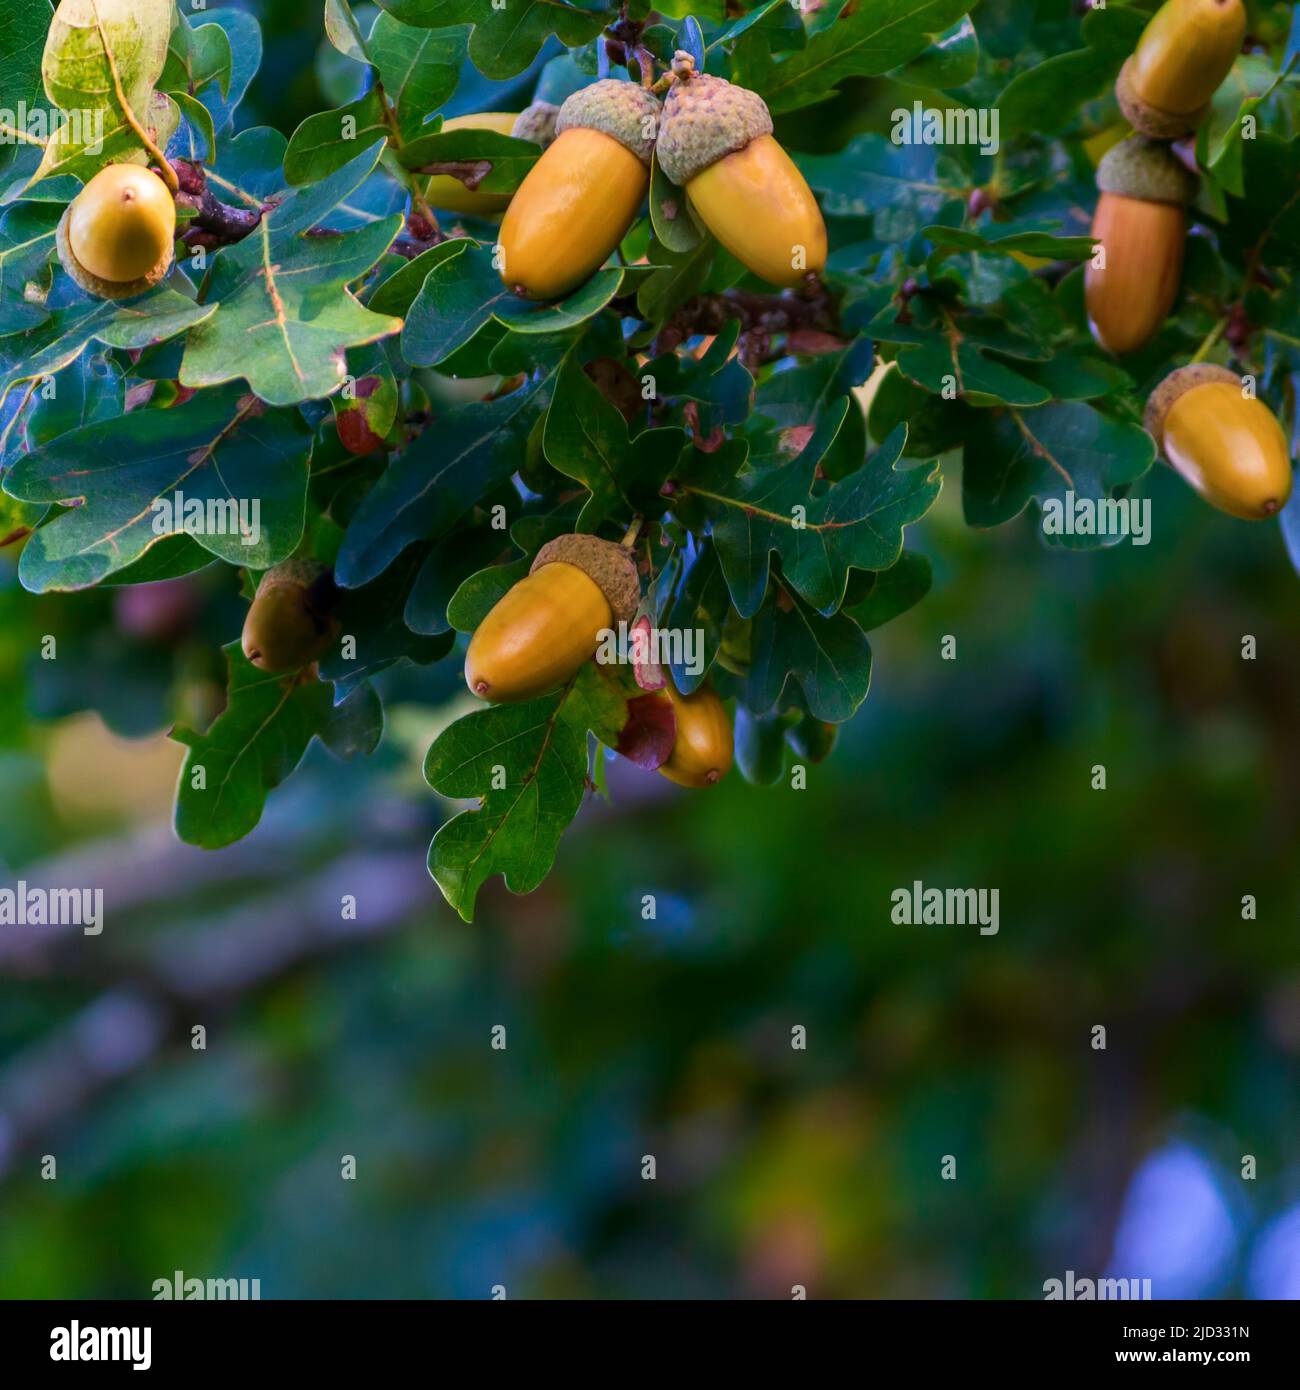 Ghianda arancione su un ramo di quercia in una foresta. Primo piano frutta di quercia e foglie su sfondo verde Foto Stock